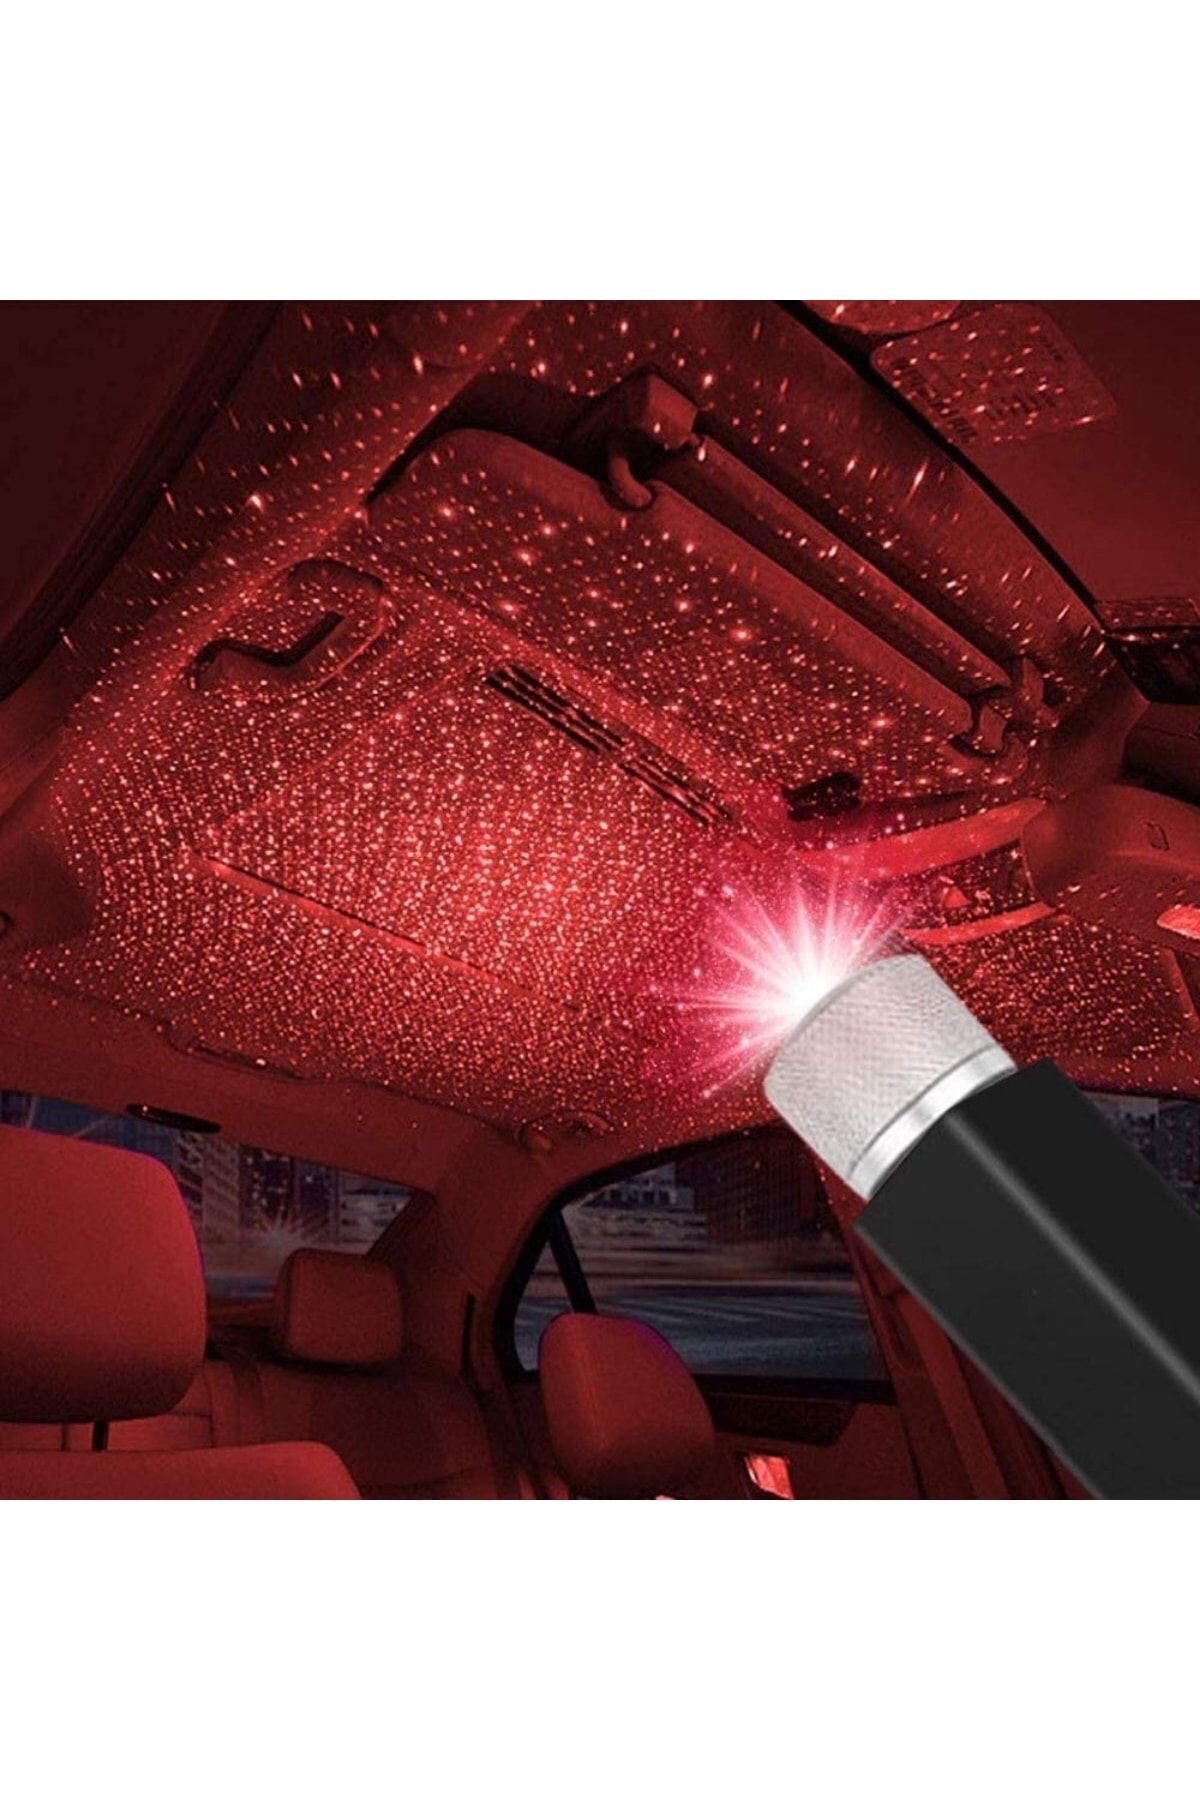 Genel Markalar Kırmızı Ayak Altı Tavan Led Araç İçi Aydınlatma İç Disko Ayarlanır Usb Lamba Işık